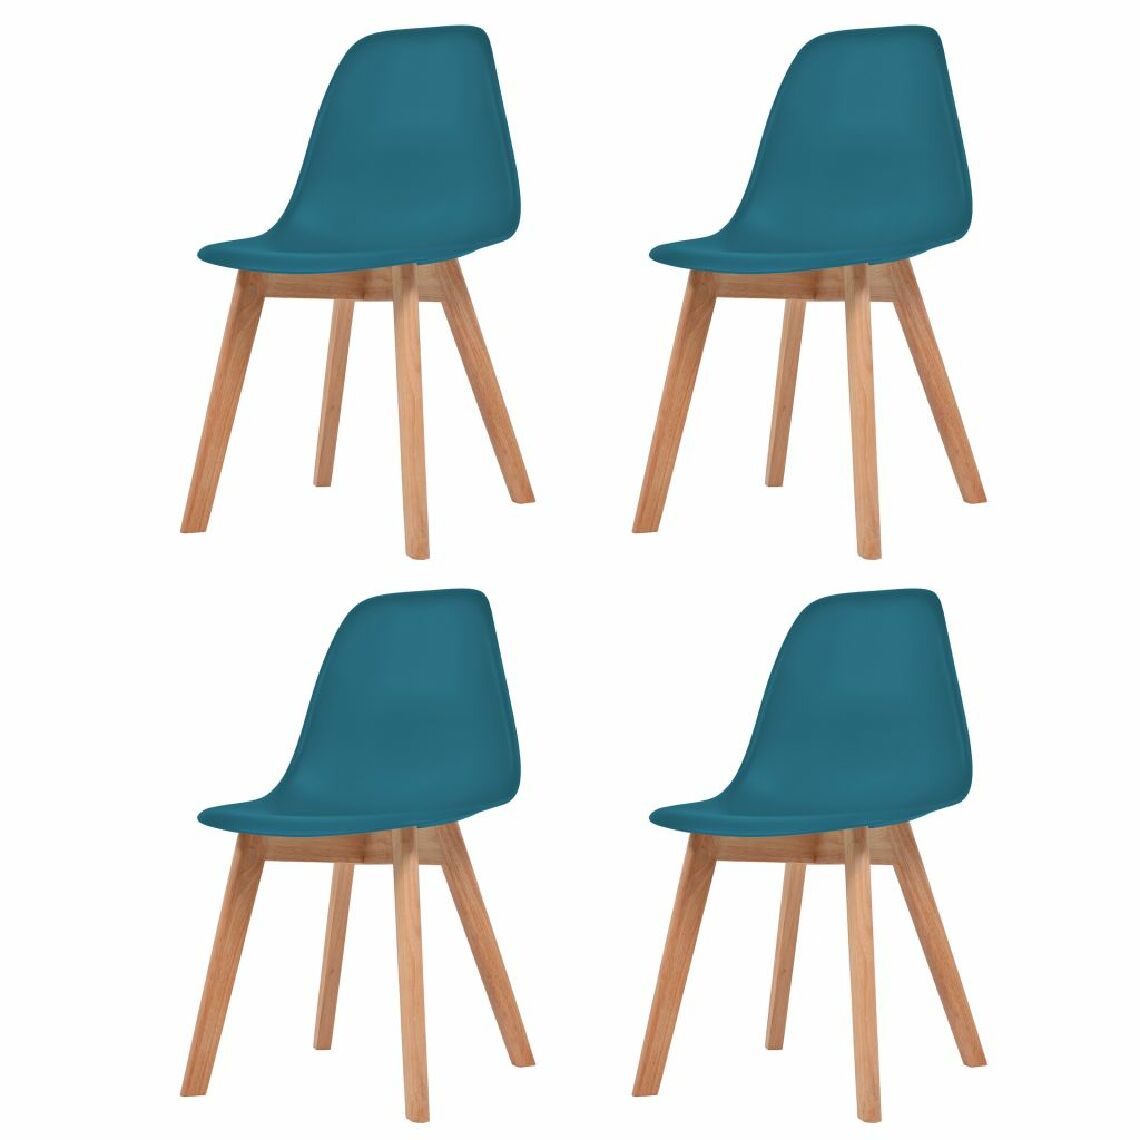 Chunhelife - Chunhelife Chaises de salle à manger 4 pcs Turquoise Plastique - Chaises